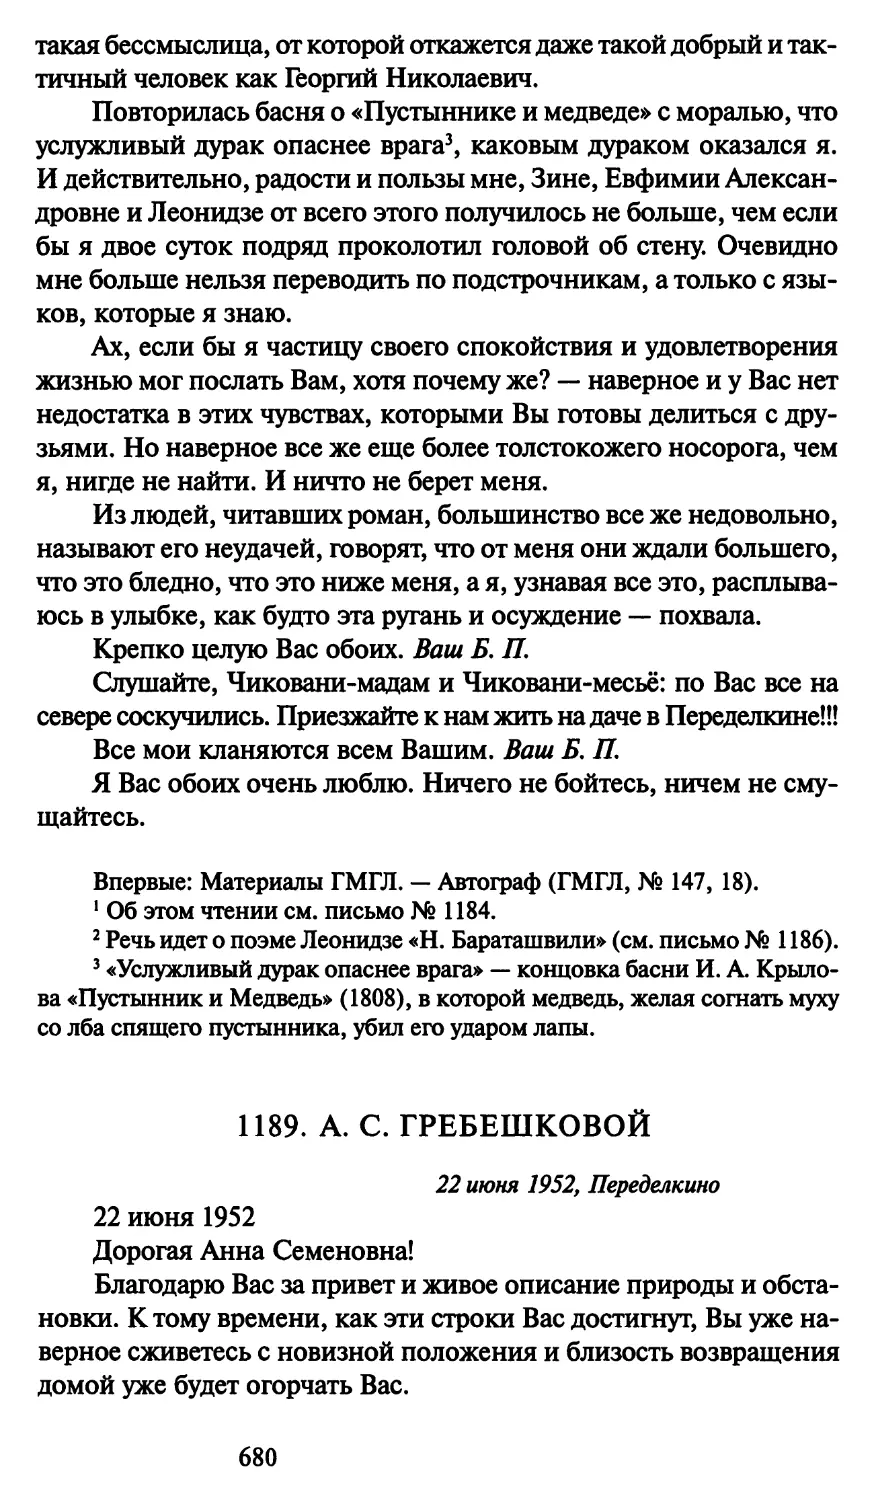 1189. А. С. Гребешковой 22 июня 1952